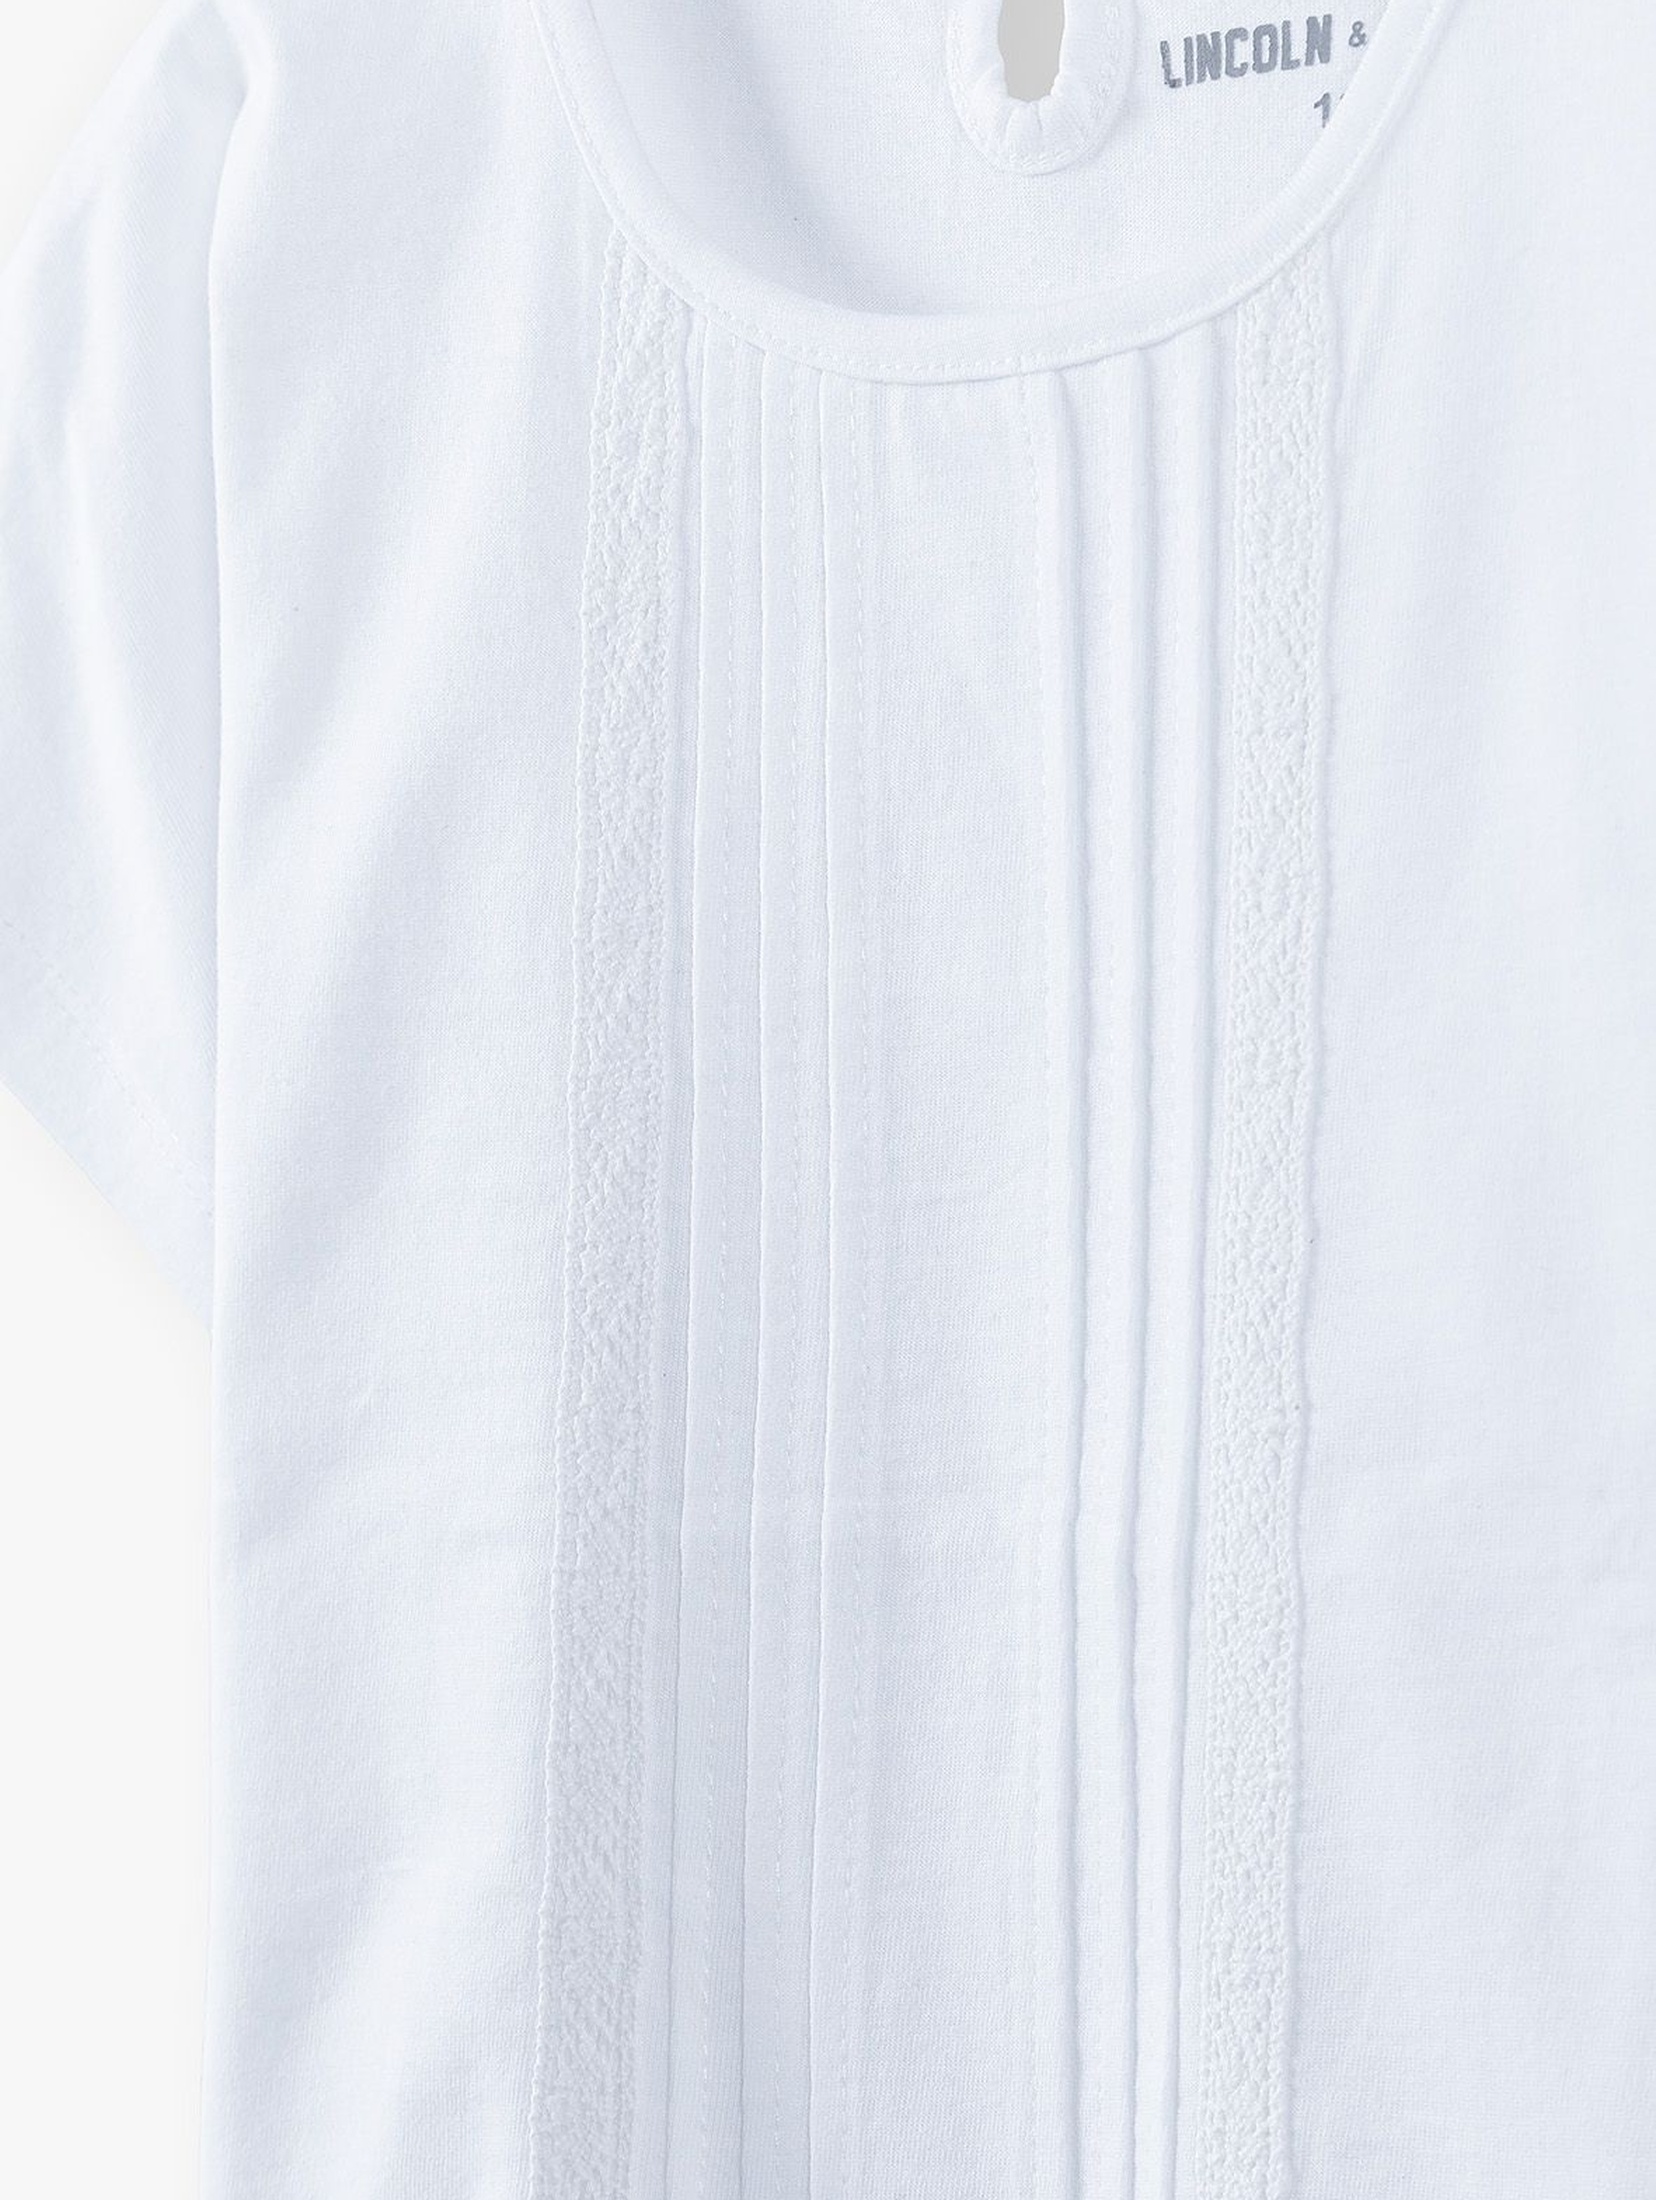 Bawełniany biały t-shirt dziewczęcy